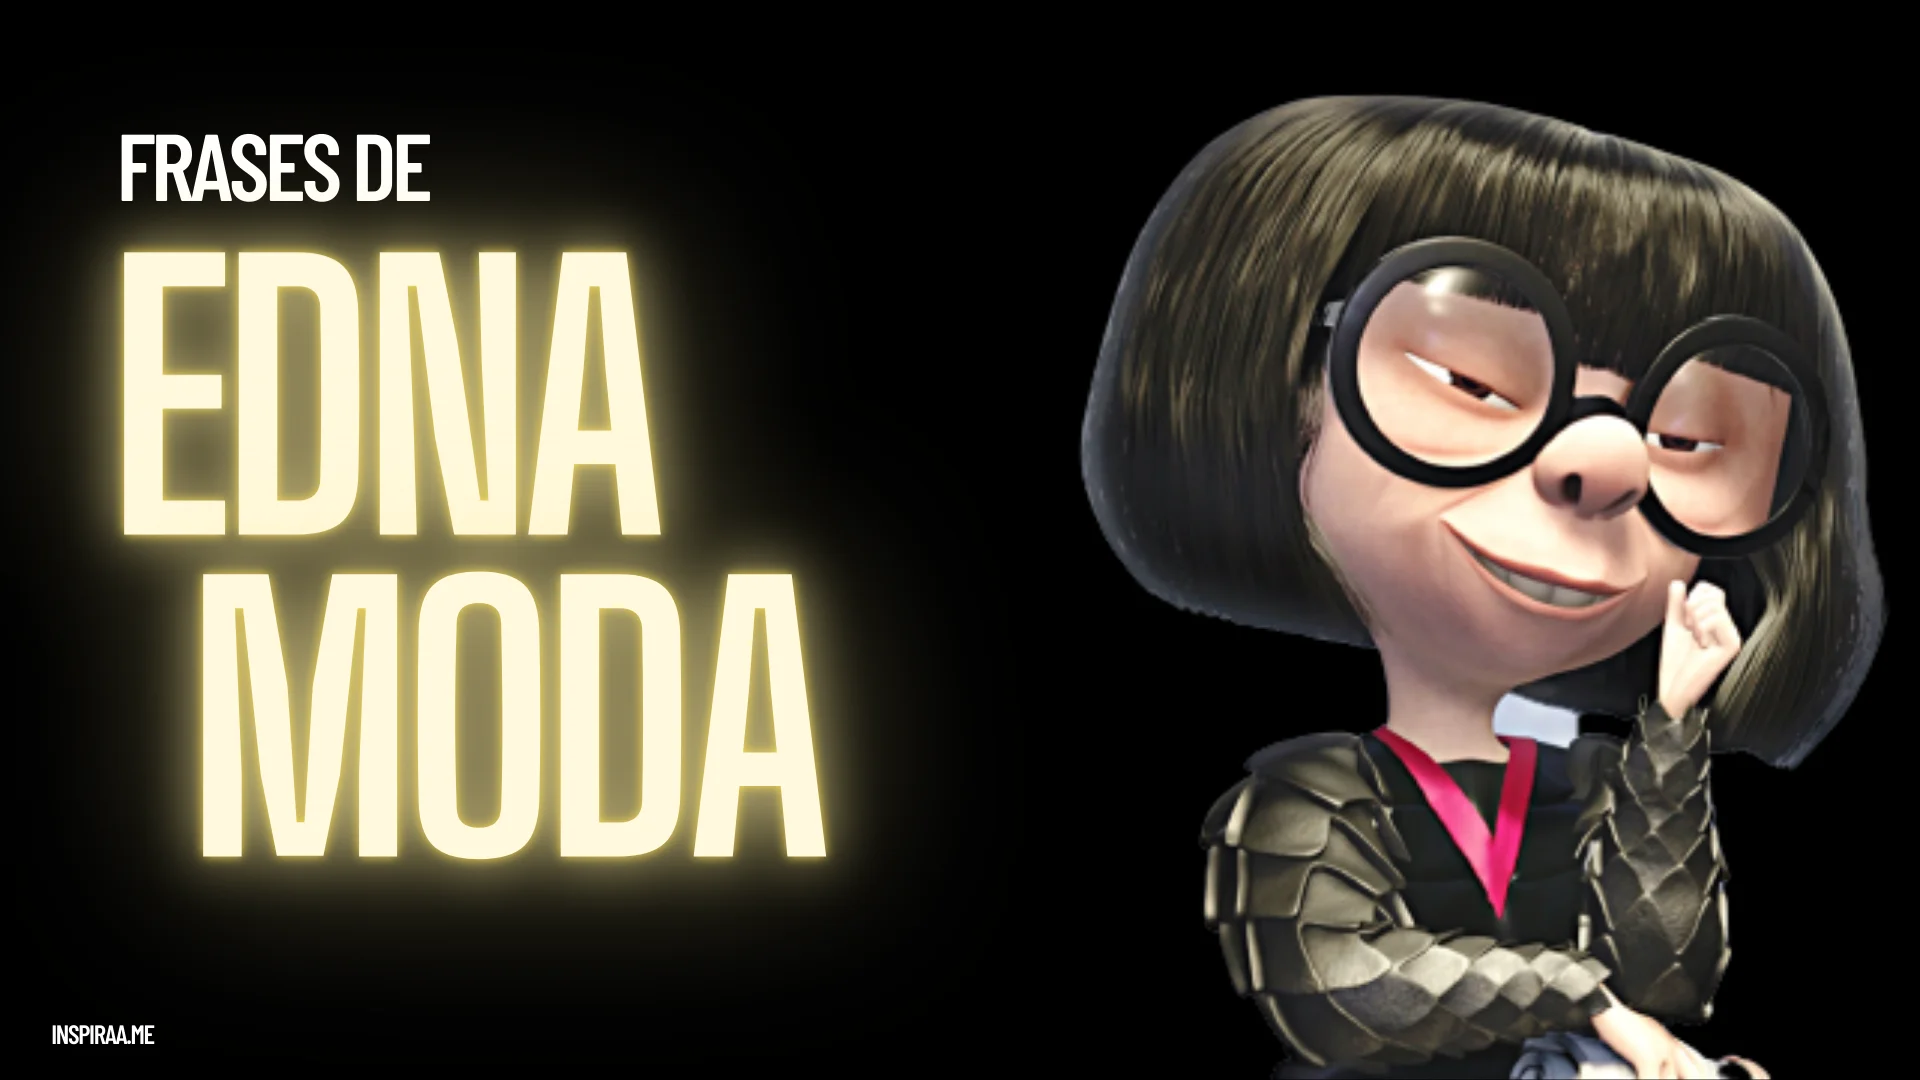 Frases de Edna Moda - las mejores Frases de este personaje iconico